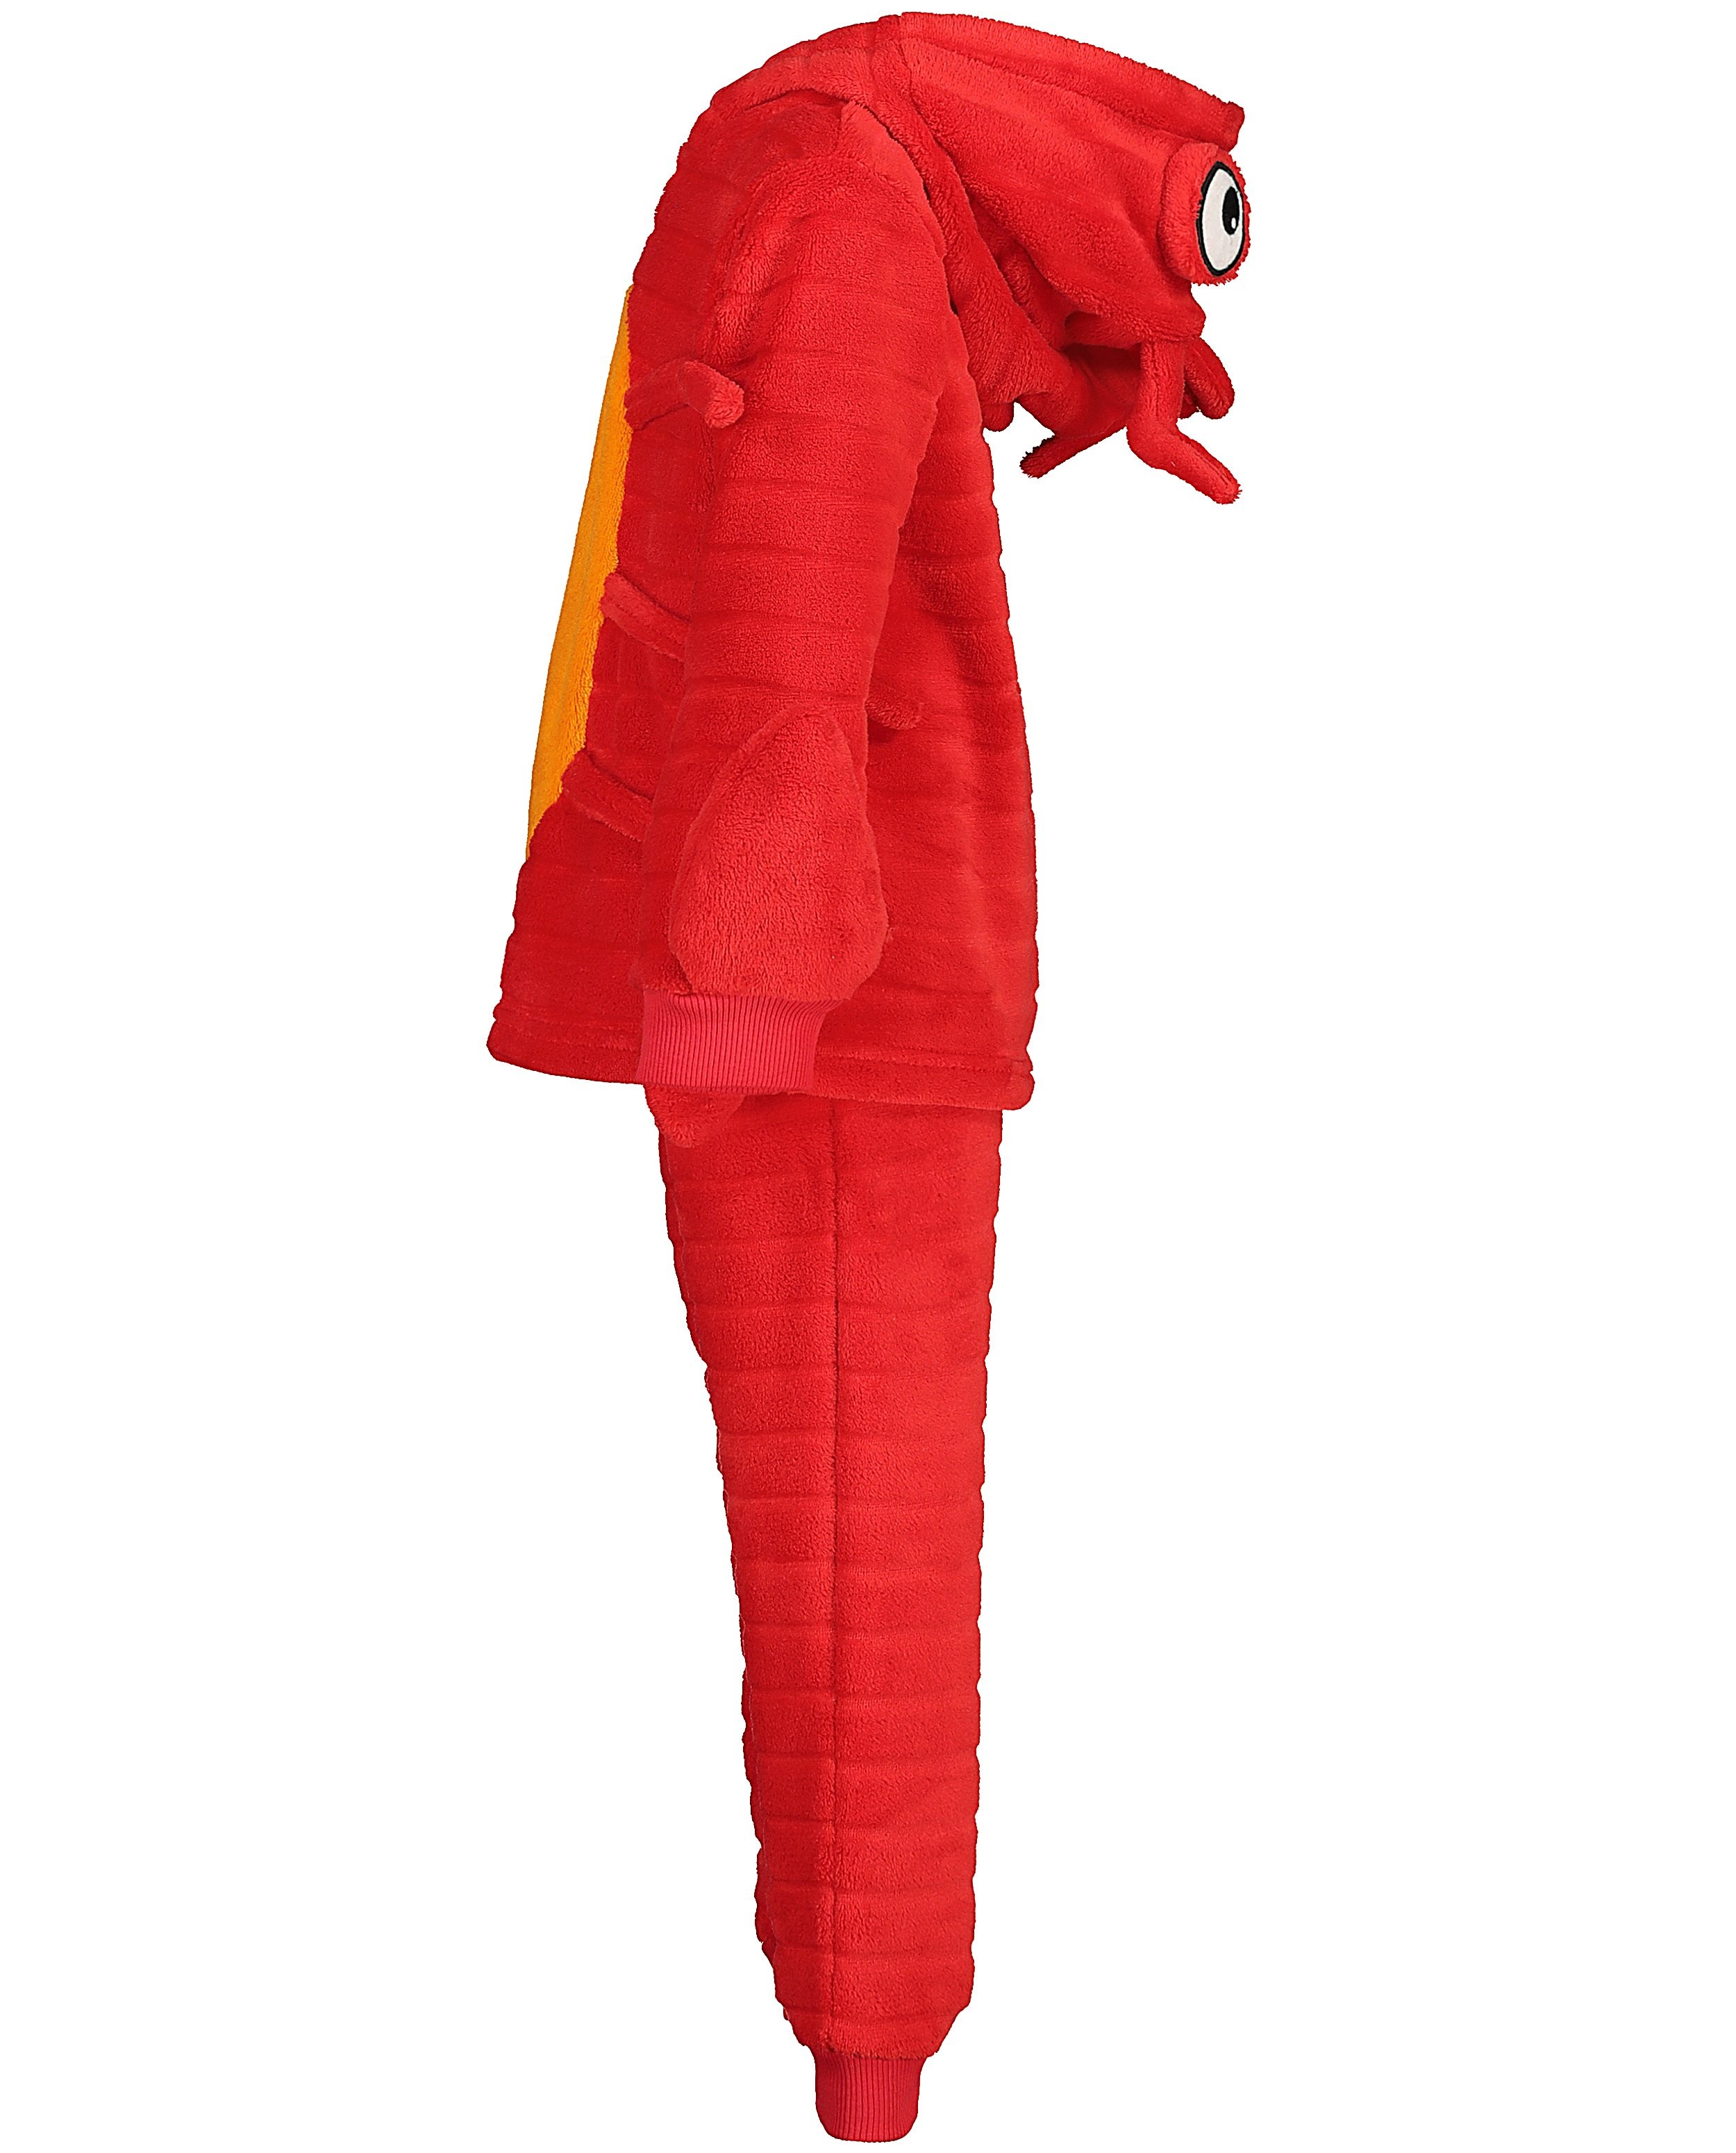 Nachtkleding - Rode pyjama van fleece